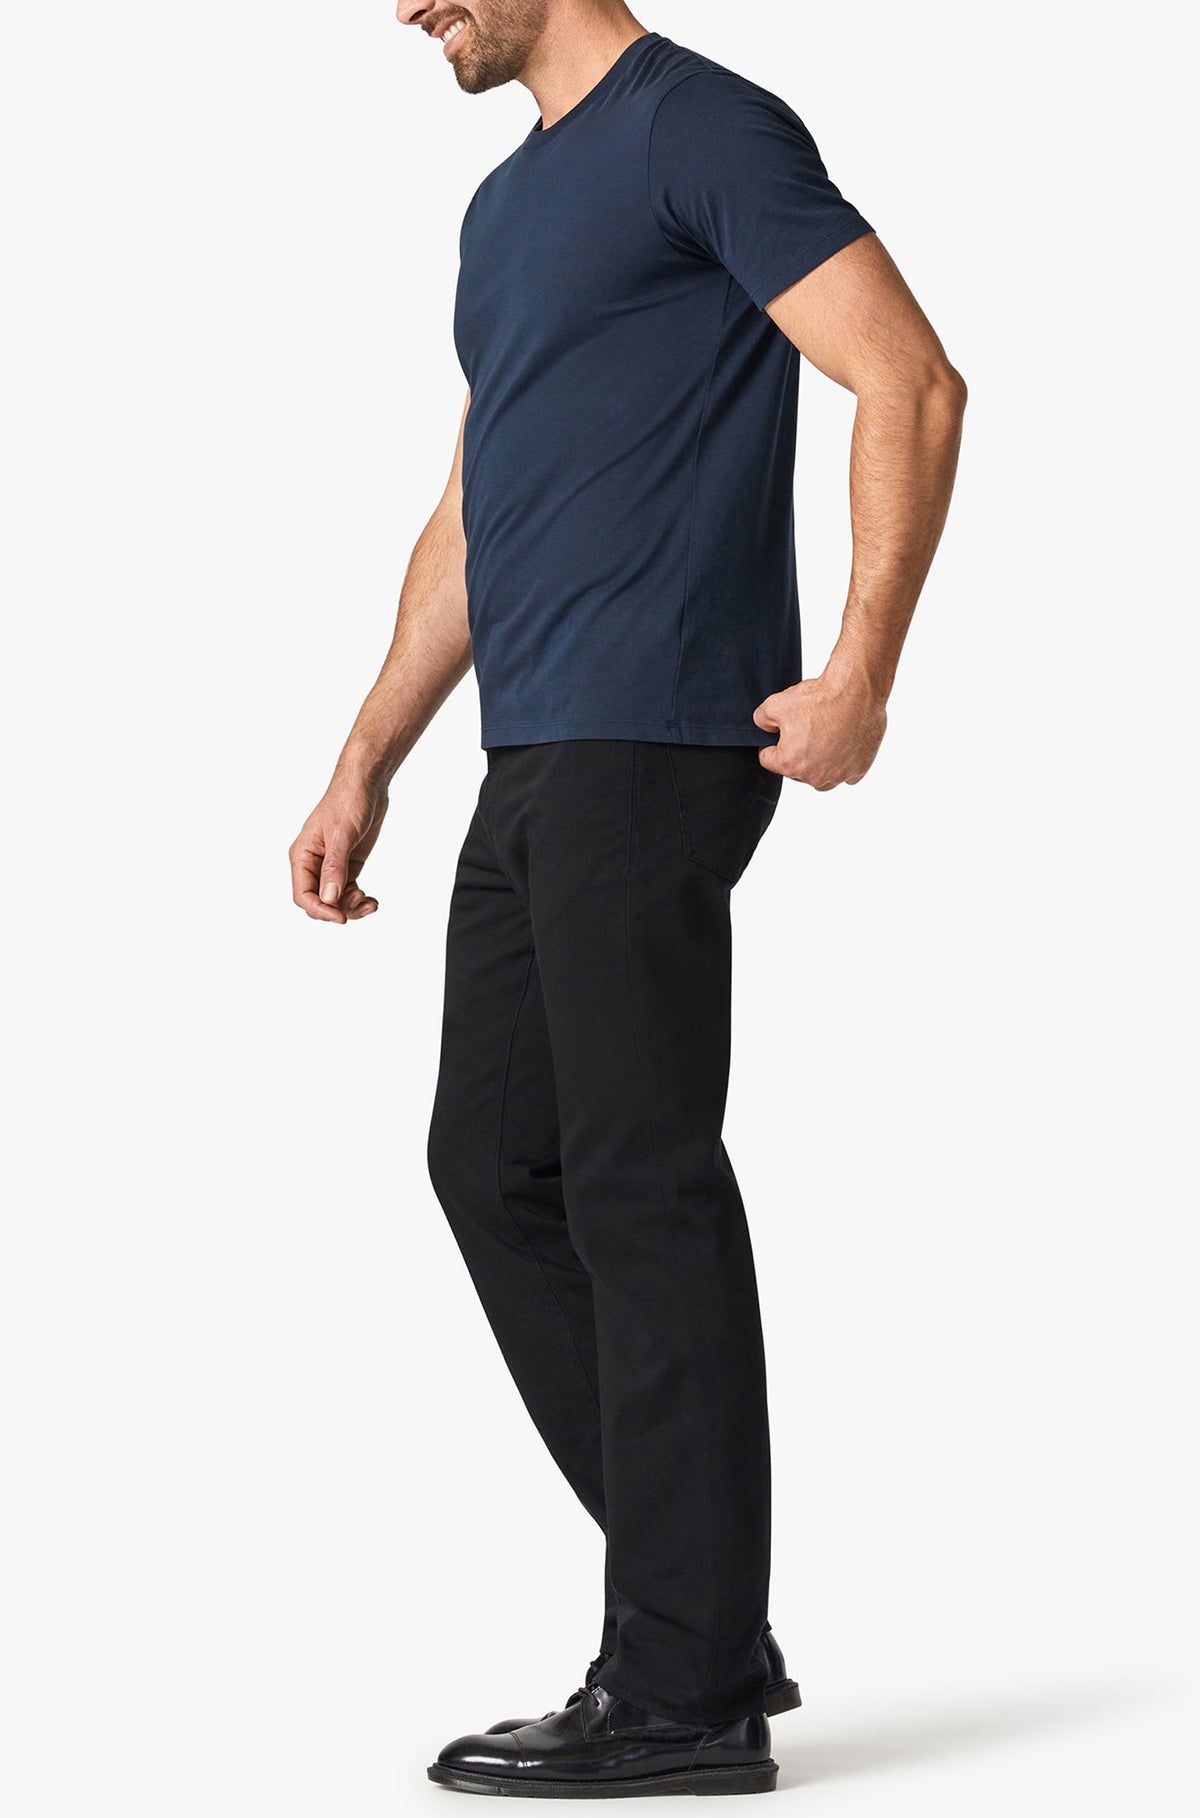 Jeans pour homme par 34 Heritage | Charisma/H001118-15223 Double Noir/Select Double Black | Machemise.ca, vêtements mode pour hommes